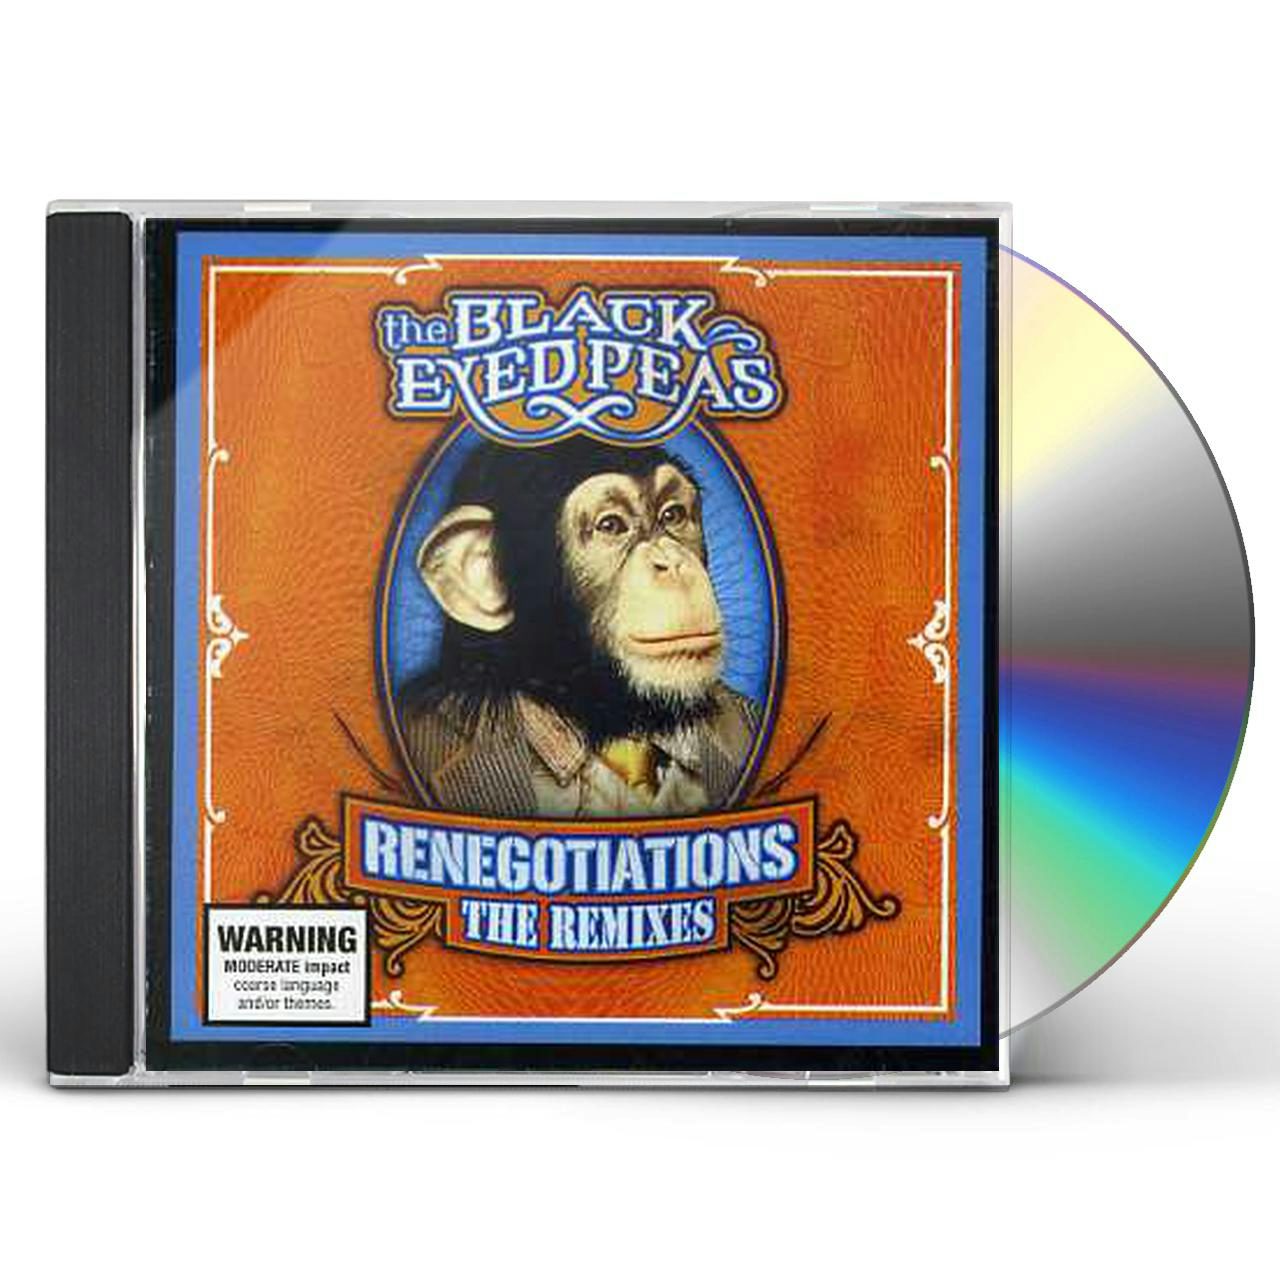 Black Eyed Peas Monkey Business Vinyl Record